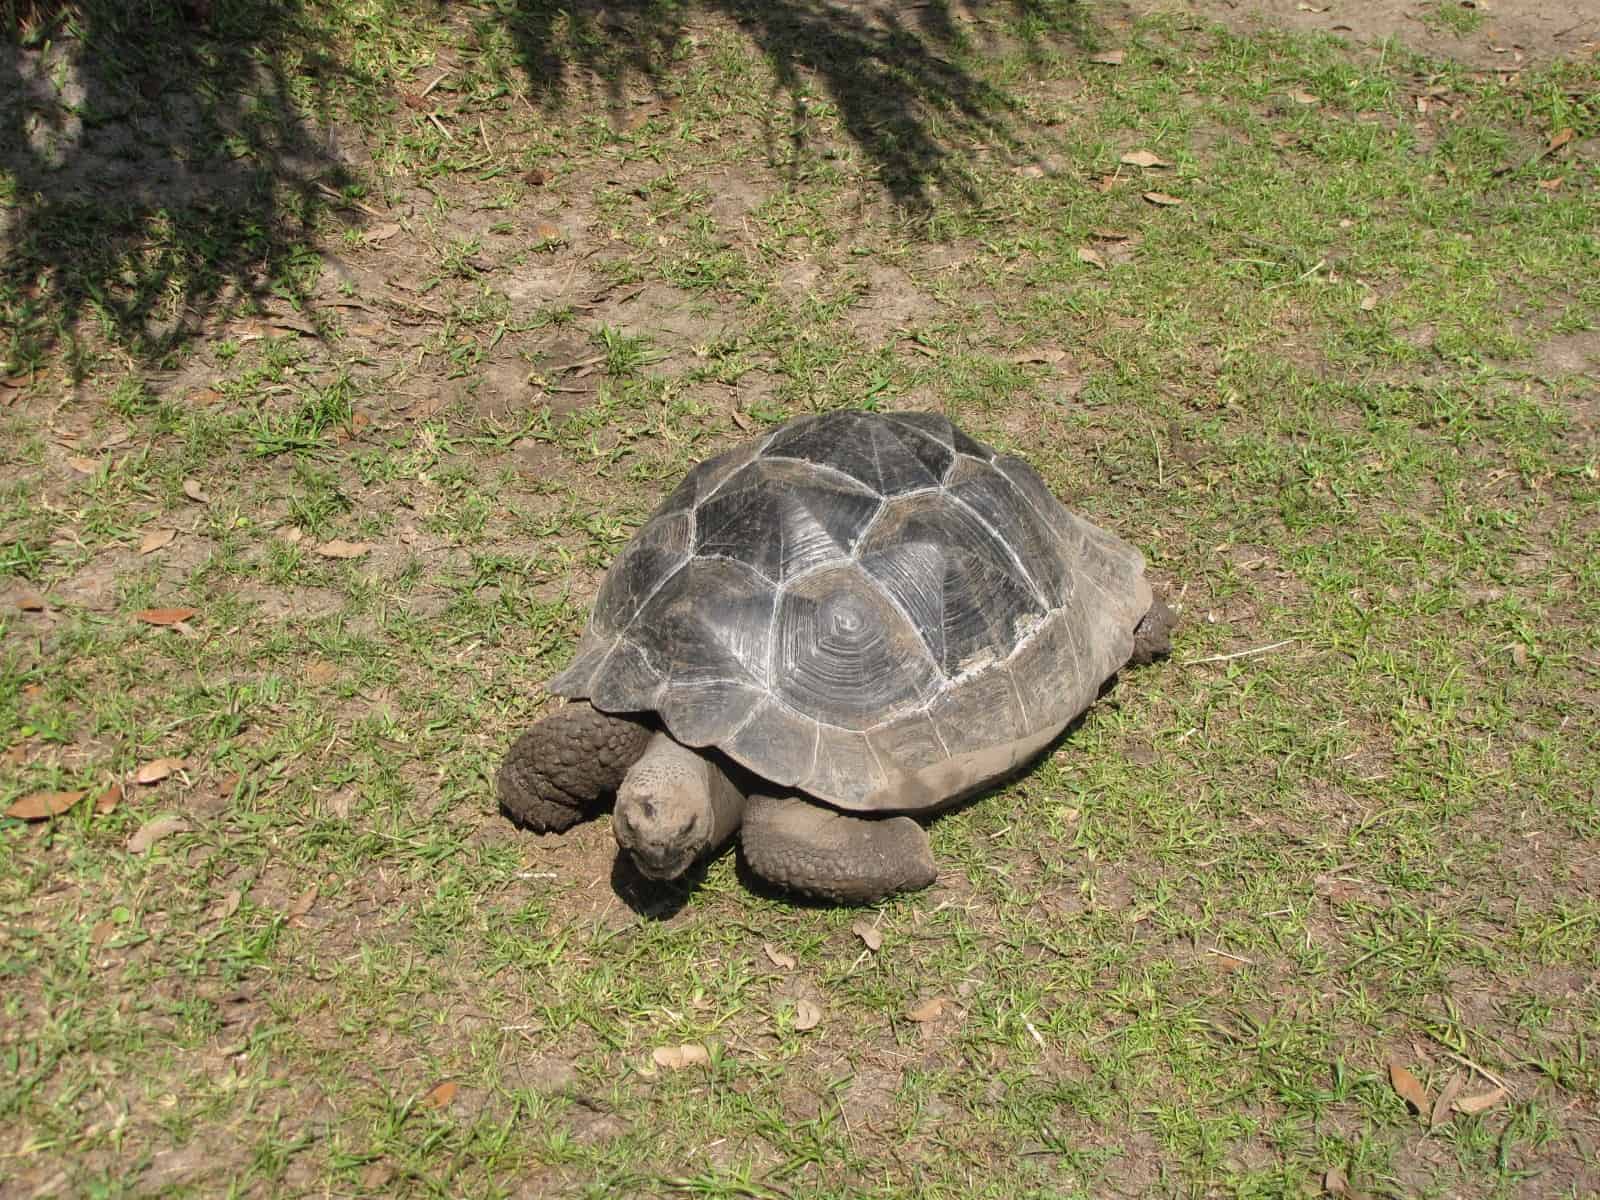 Turtle at Houston Zoo in Houston TX